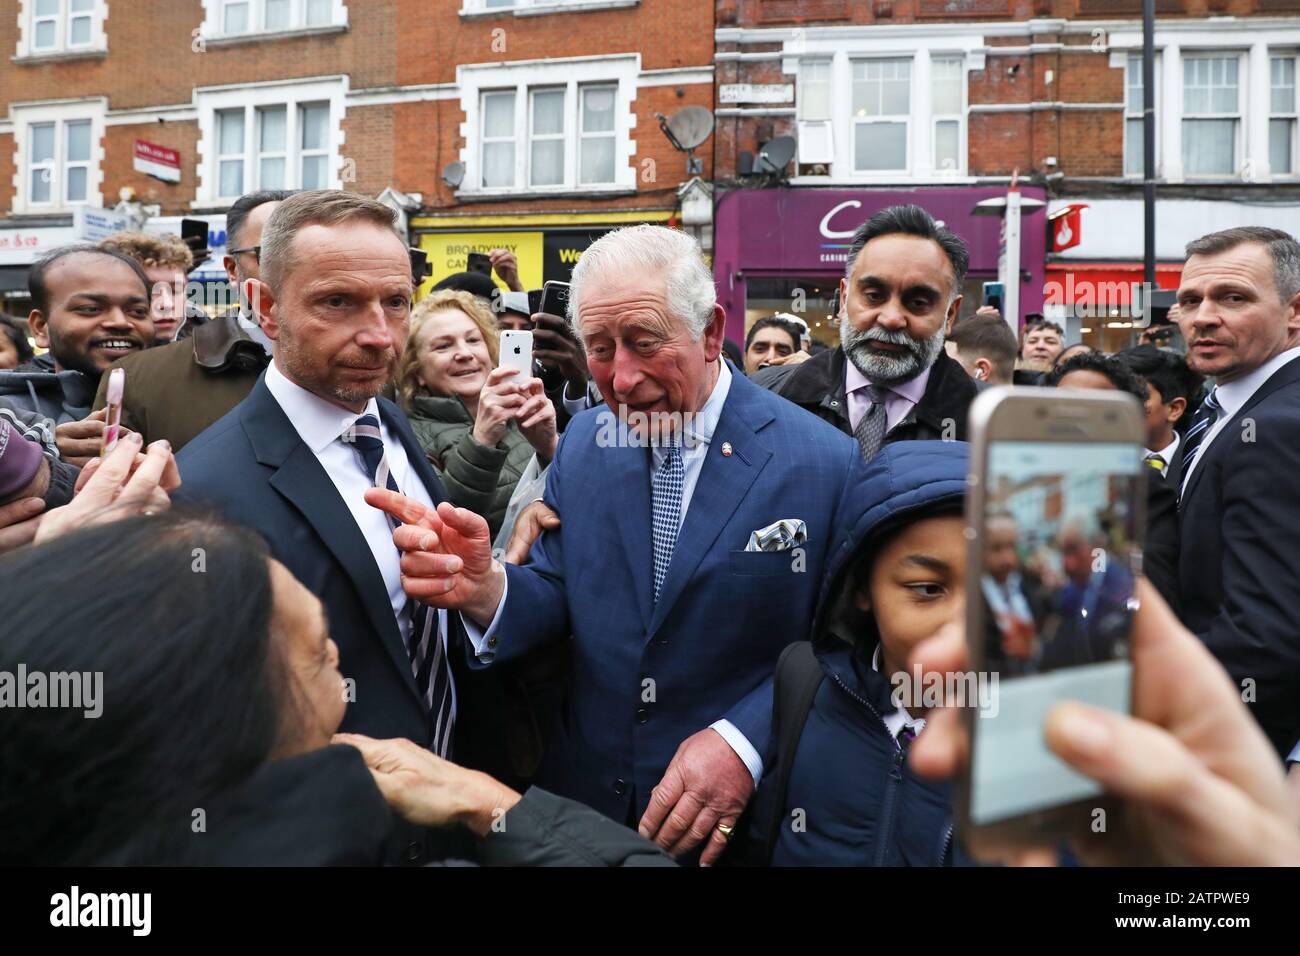 Der Prince of Wales wird von Mitgliedern der Öffentlichkeit begrüßt, da er einen TK Maxx Store in Tooting High Street, London verlässt, nachdem er sich mit Mitarbeitern, die Prince's Trust Alumni im Laden sind, zusammenfand. Stockfoto